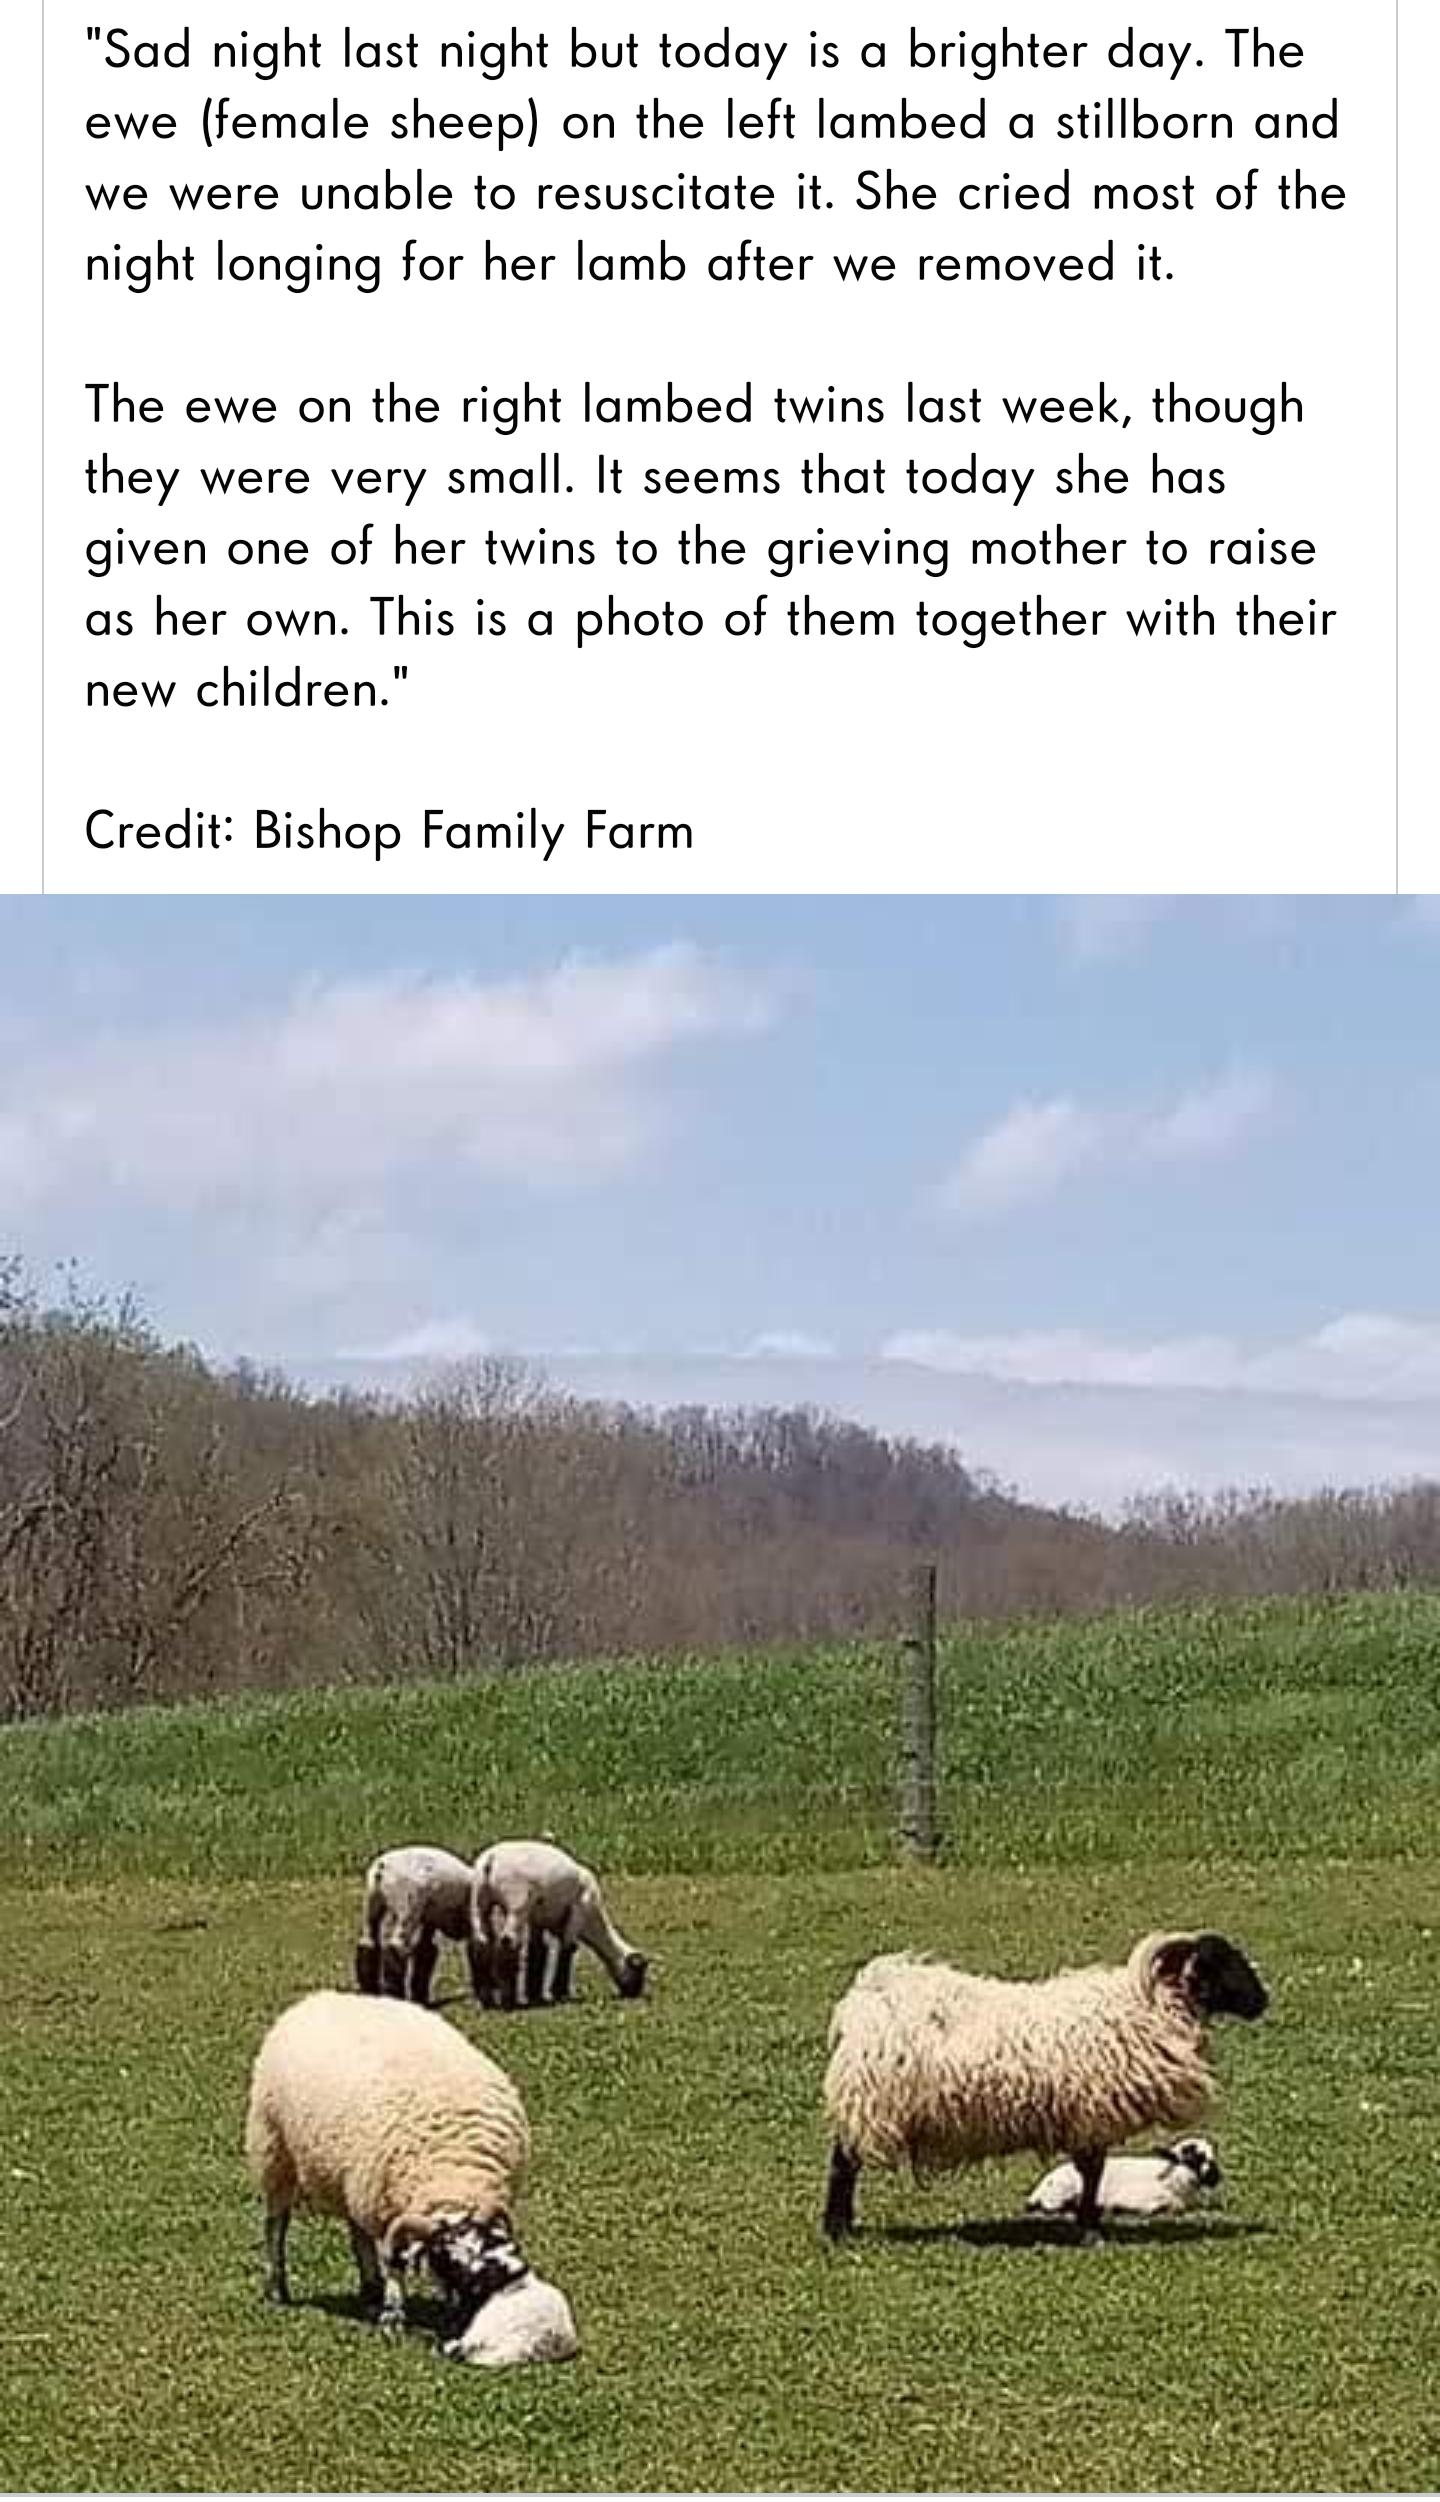 Baa-ram-ewe. Baa-ram-ewe. To your breed, your fleece, your clan be true. Sheep be true. Baa-ram-ewe.